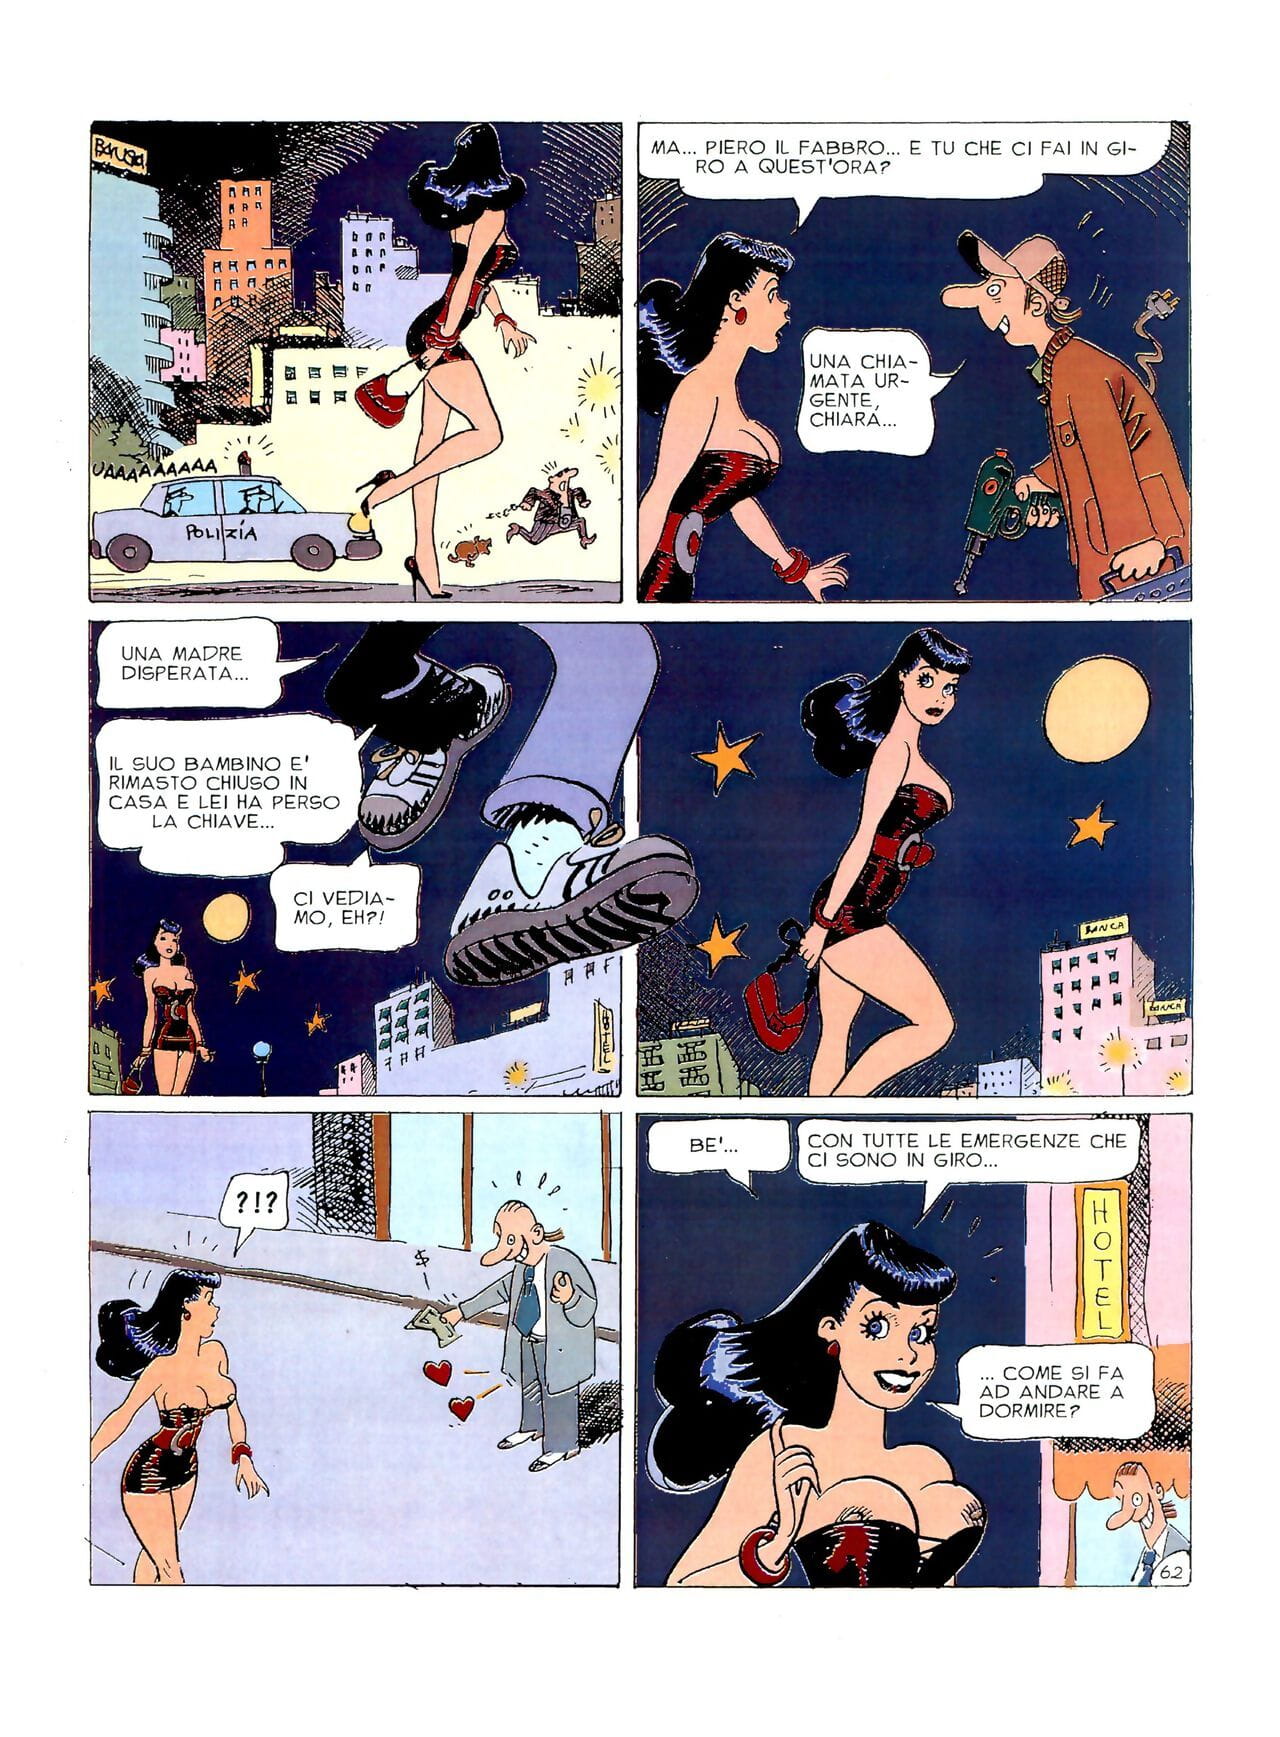 chiara Di noite #1 parte 3 page 1